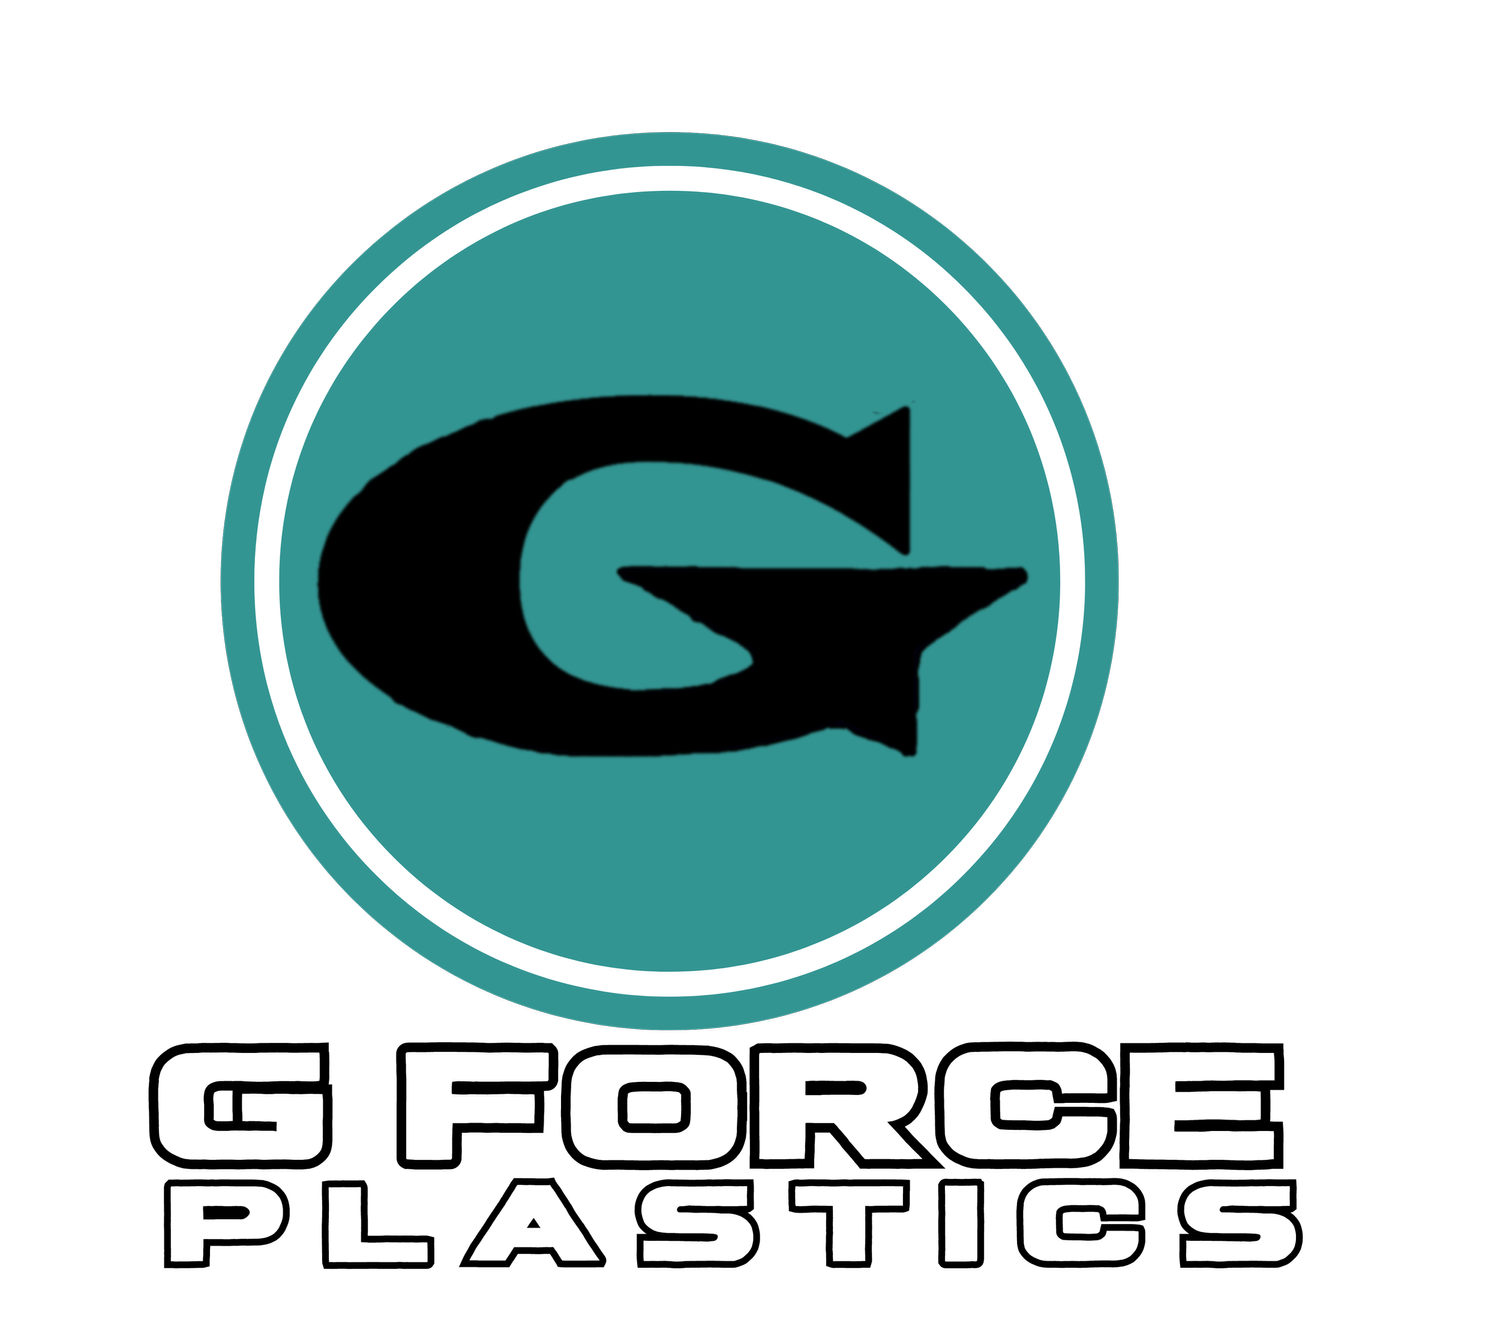 Gforceplastics.com